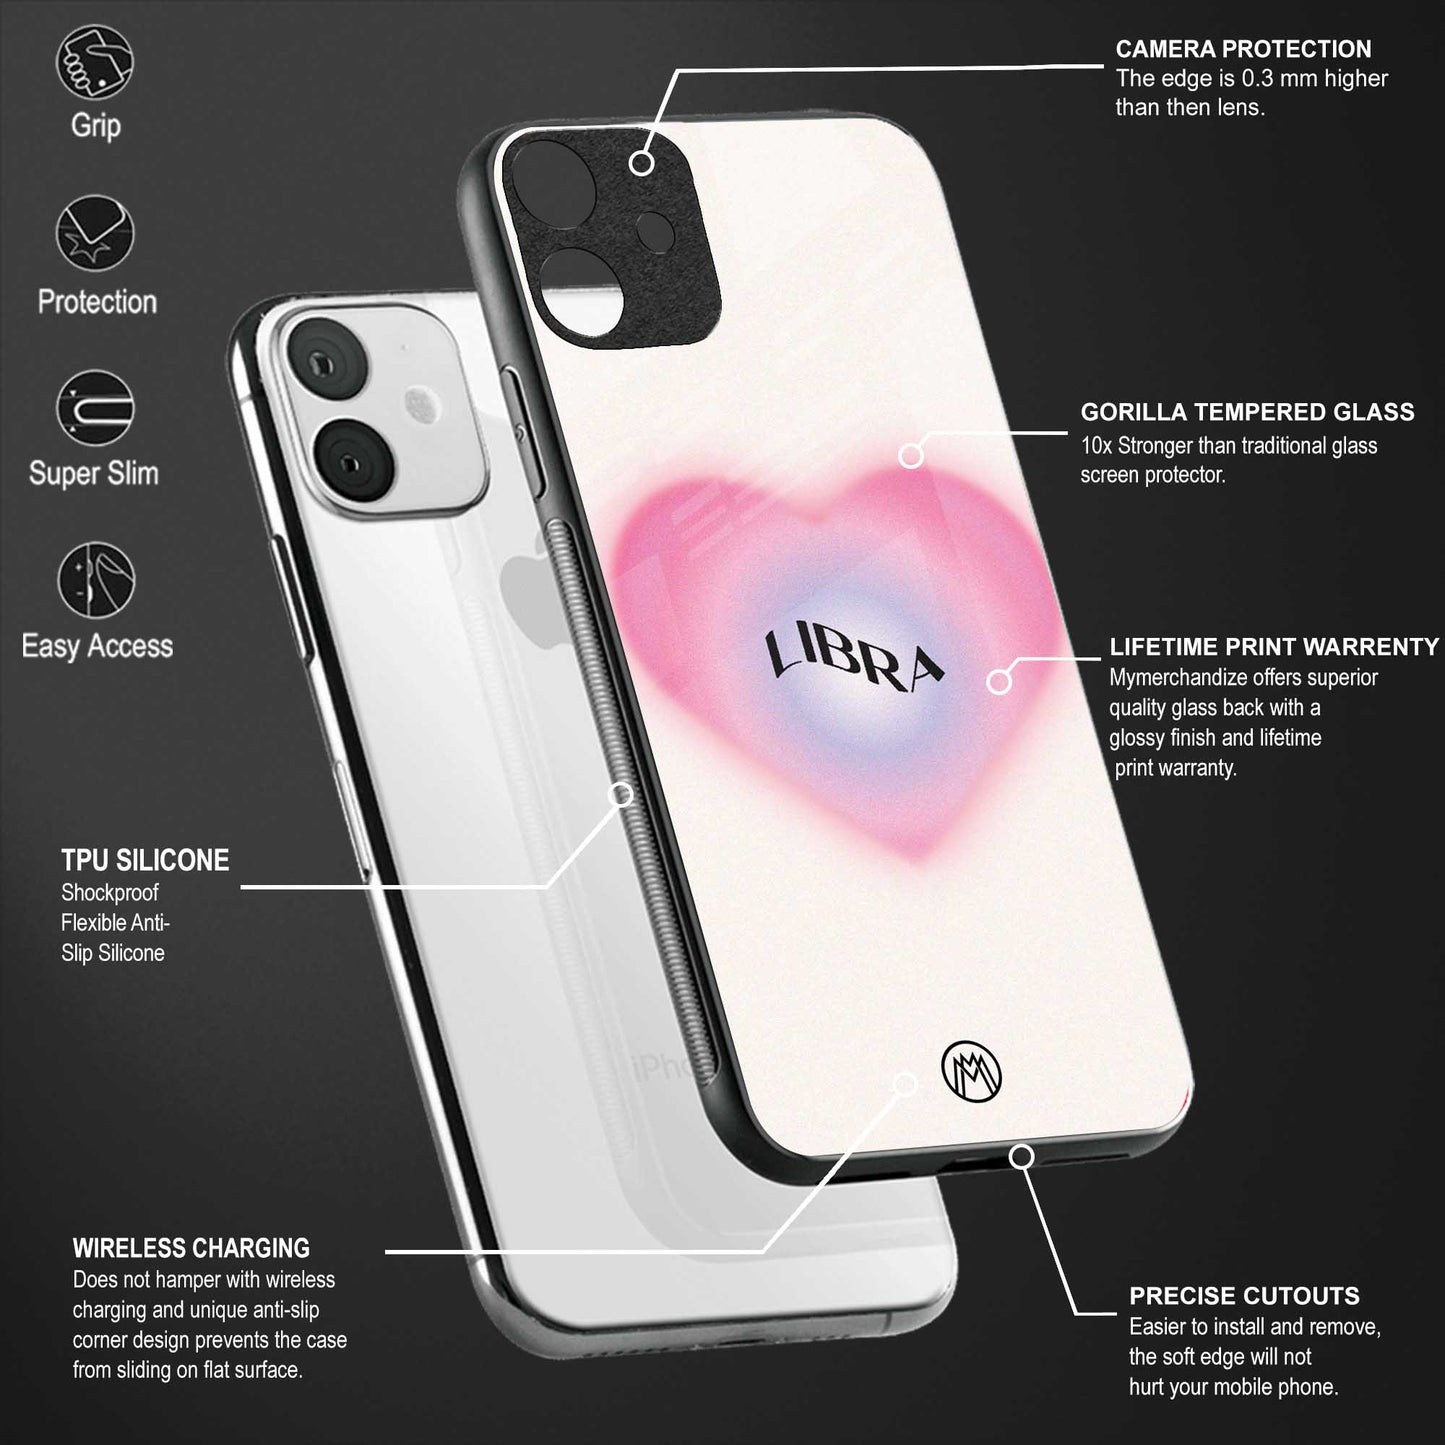 libra minimalistic back phone cover | glass case for oppo reno 5